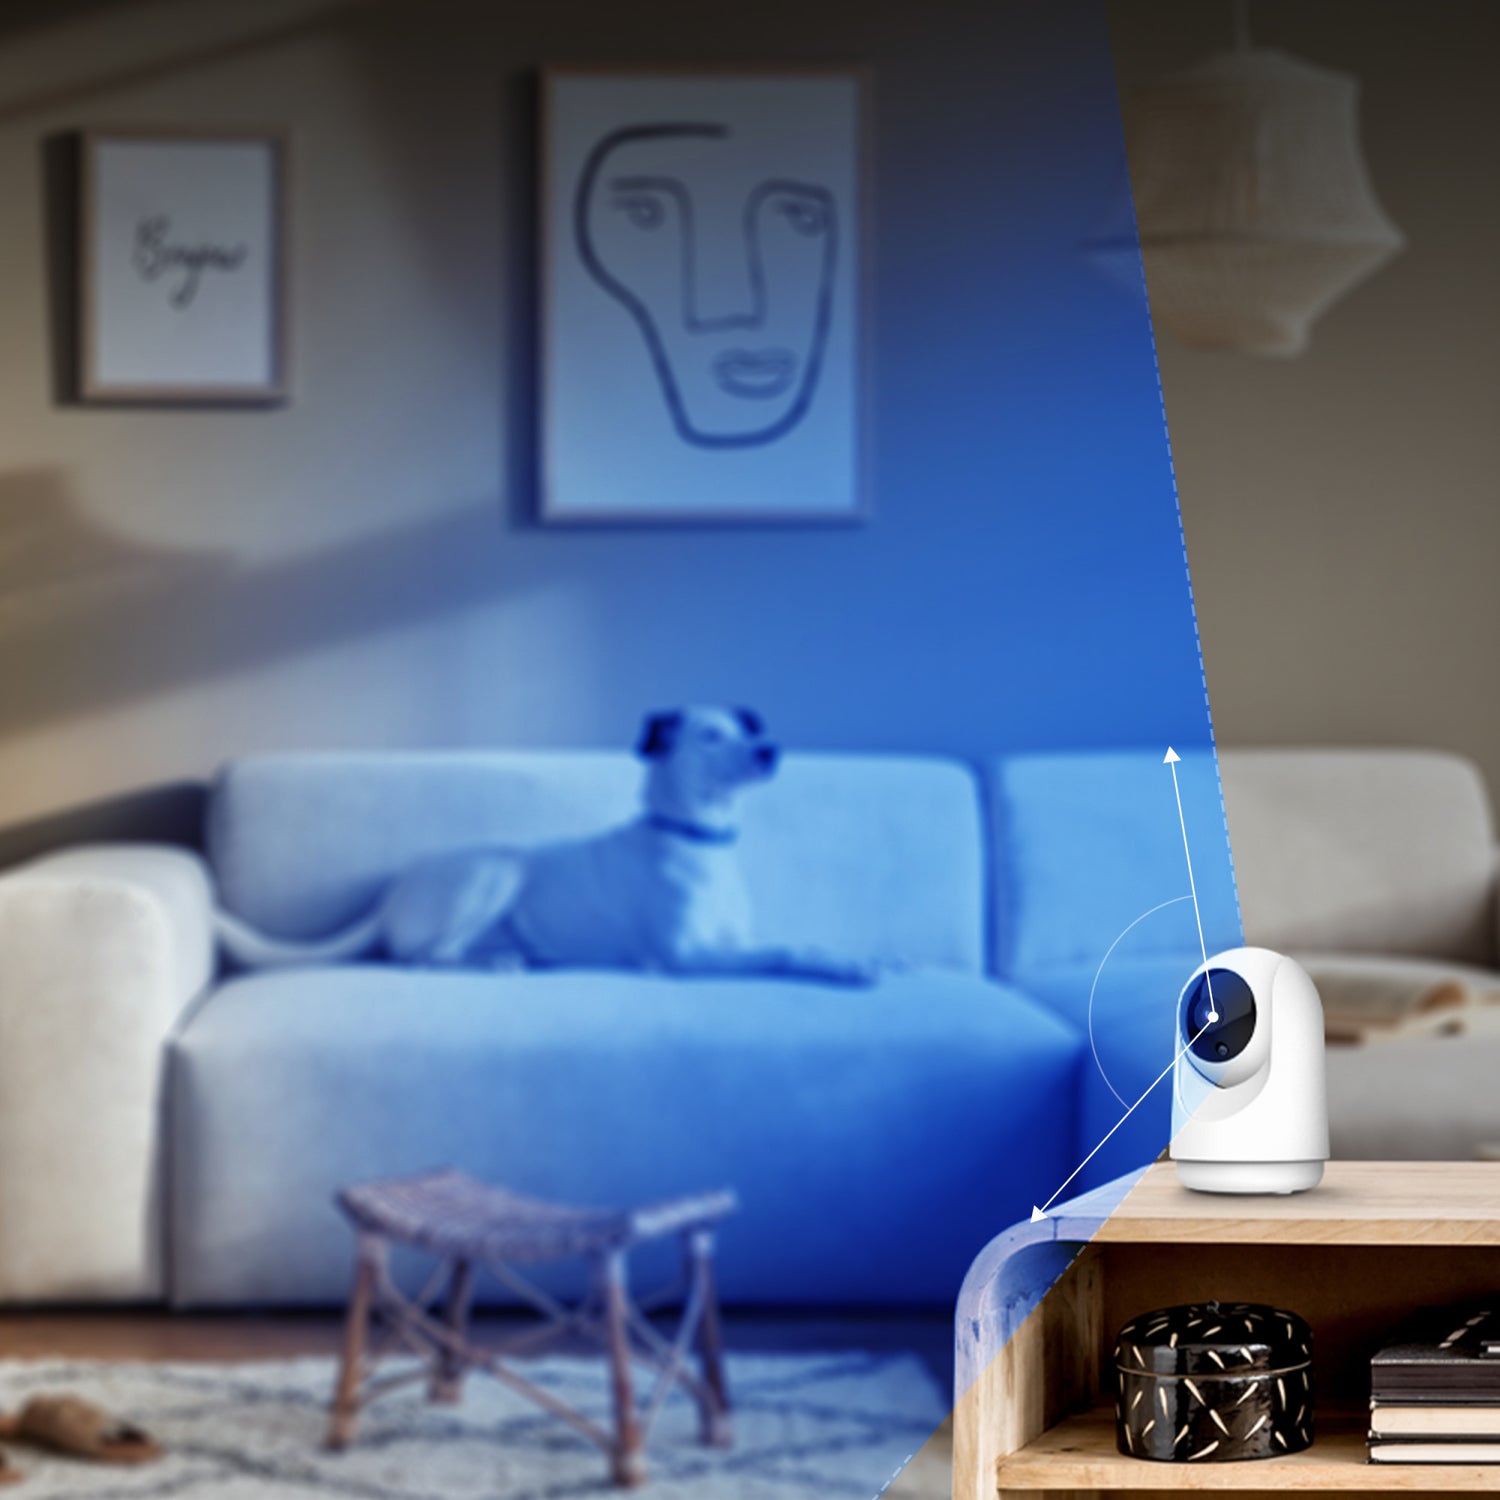 Smart Indoor Pan and Tilt Camera